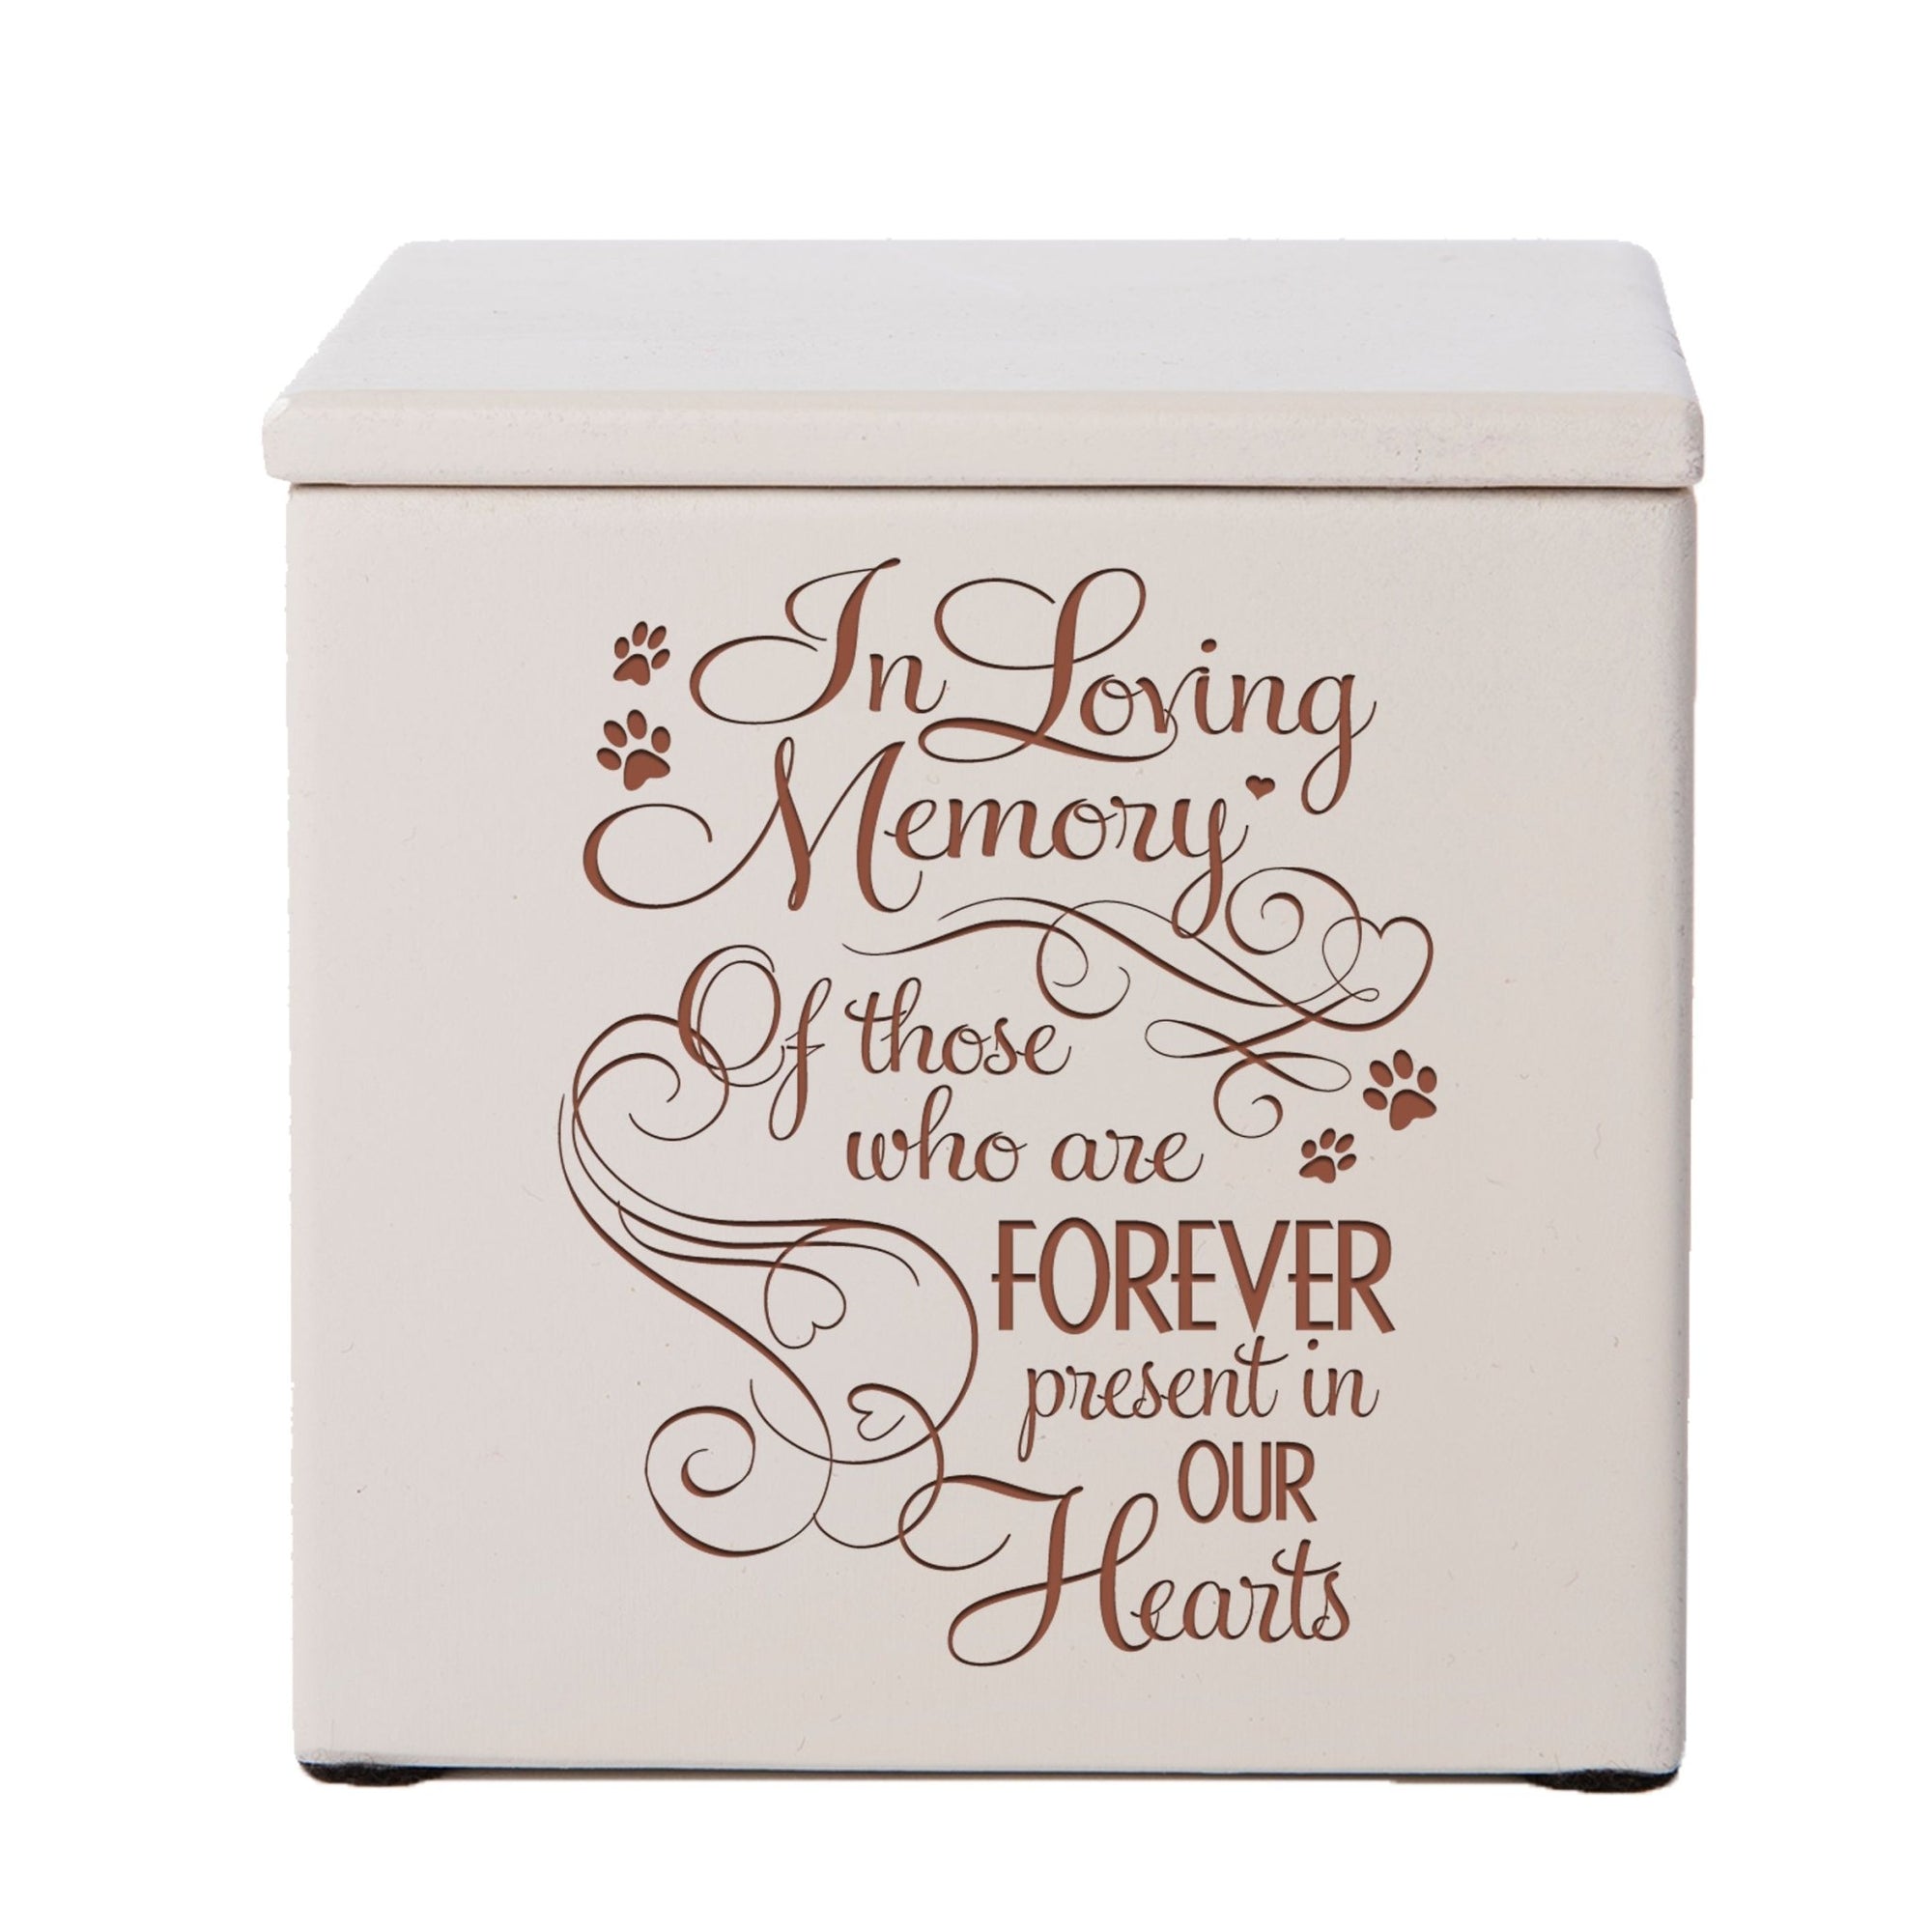 Wooden Memorial Pet Cremation Urn Box - In Loving Memory - LifeSong Milestones